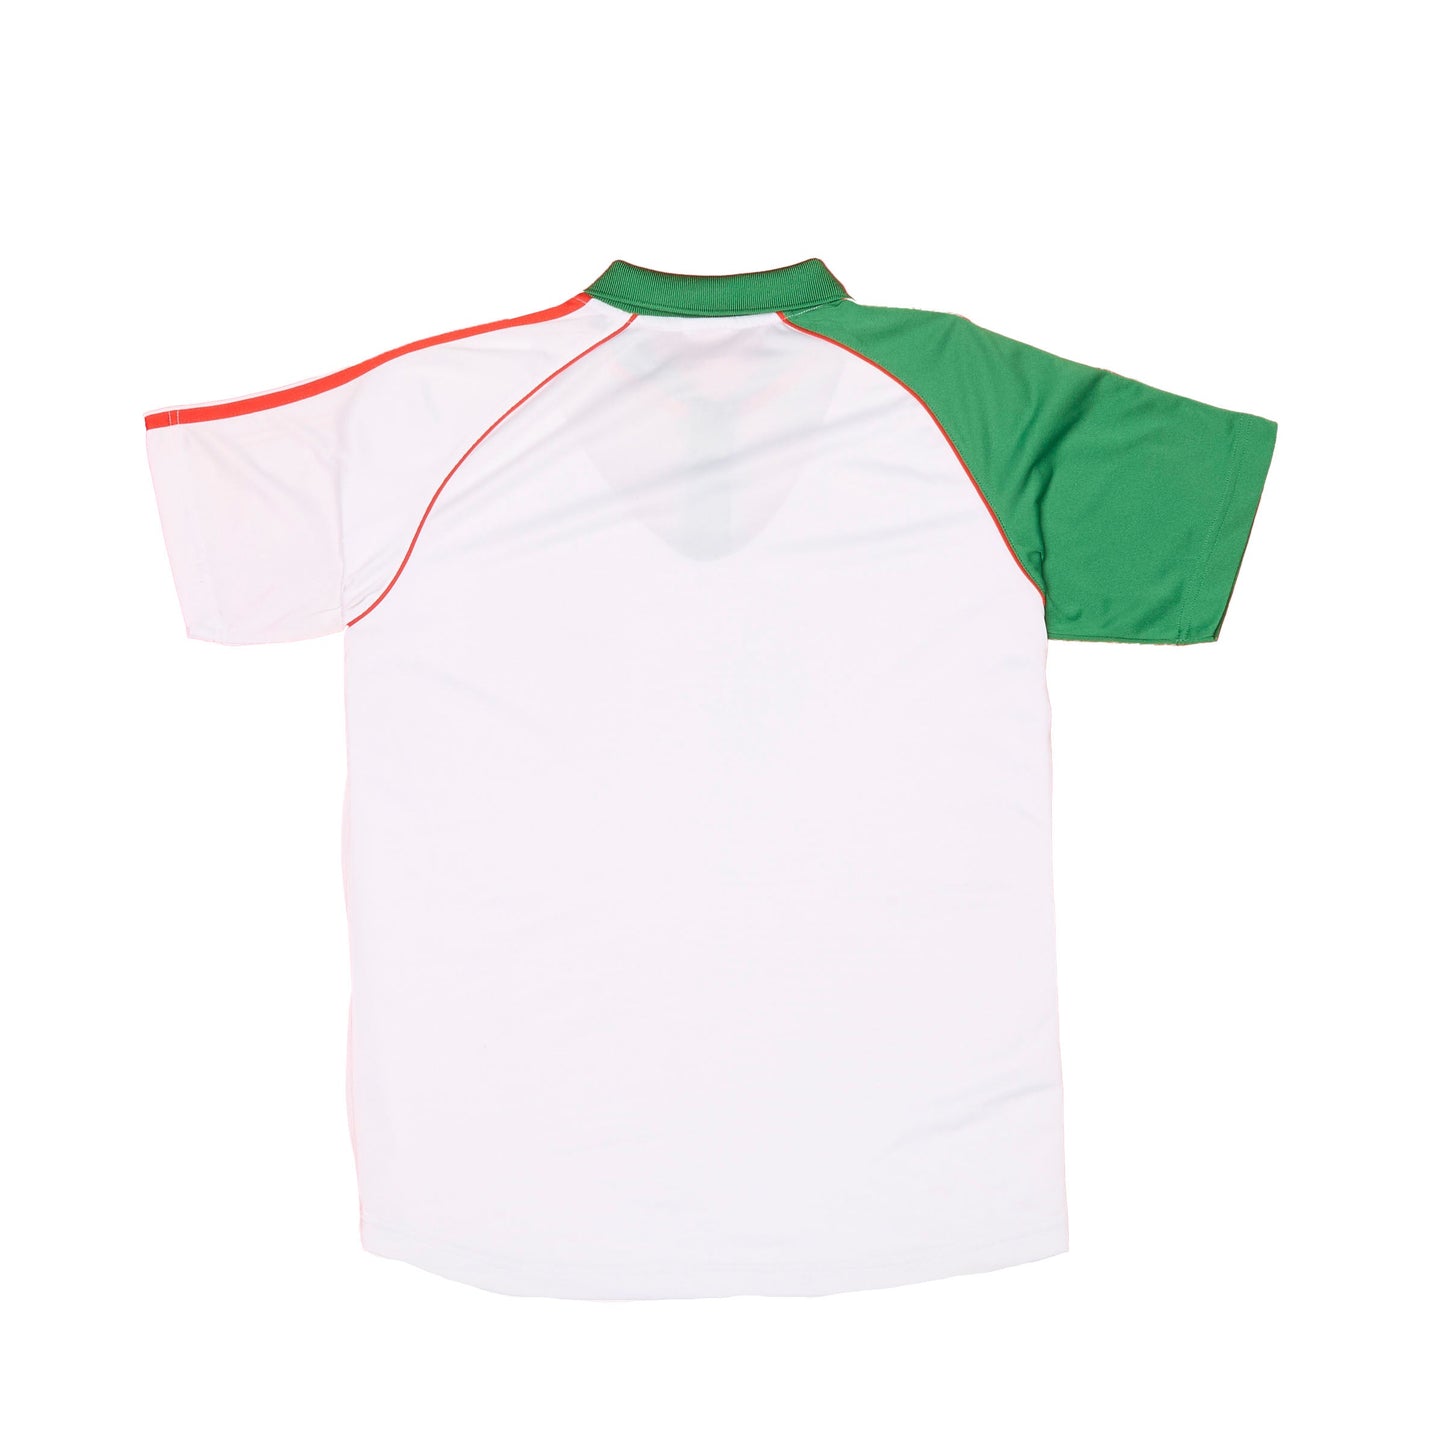 Camiseta deportiva con cuello y logo Castol de Adidas - S